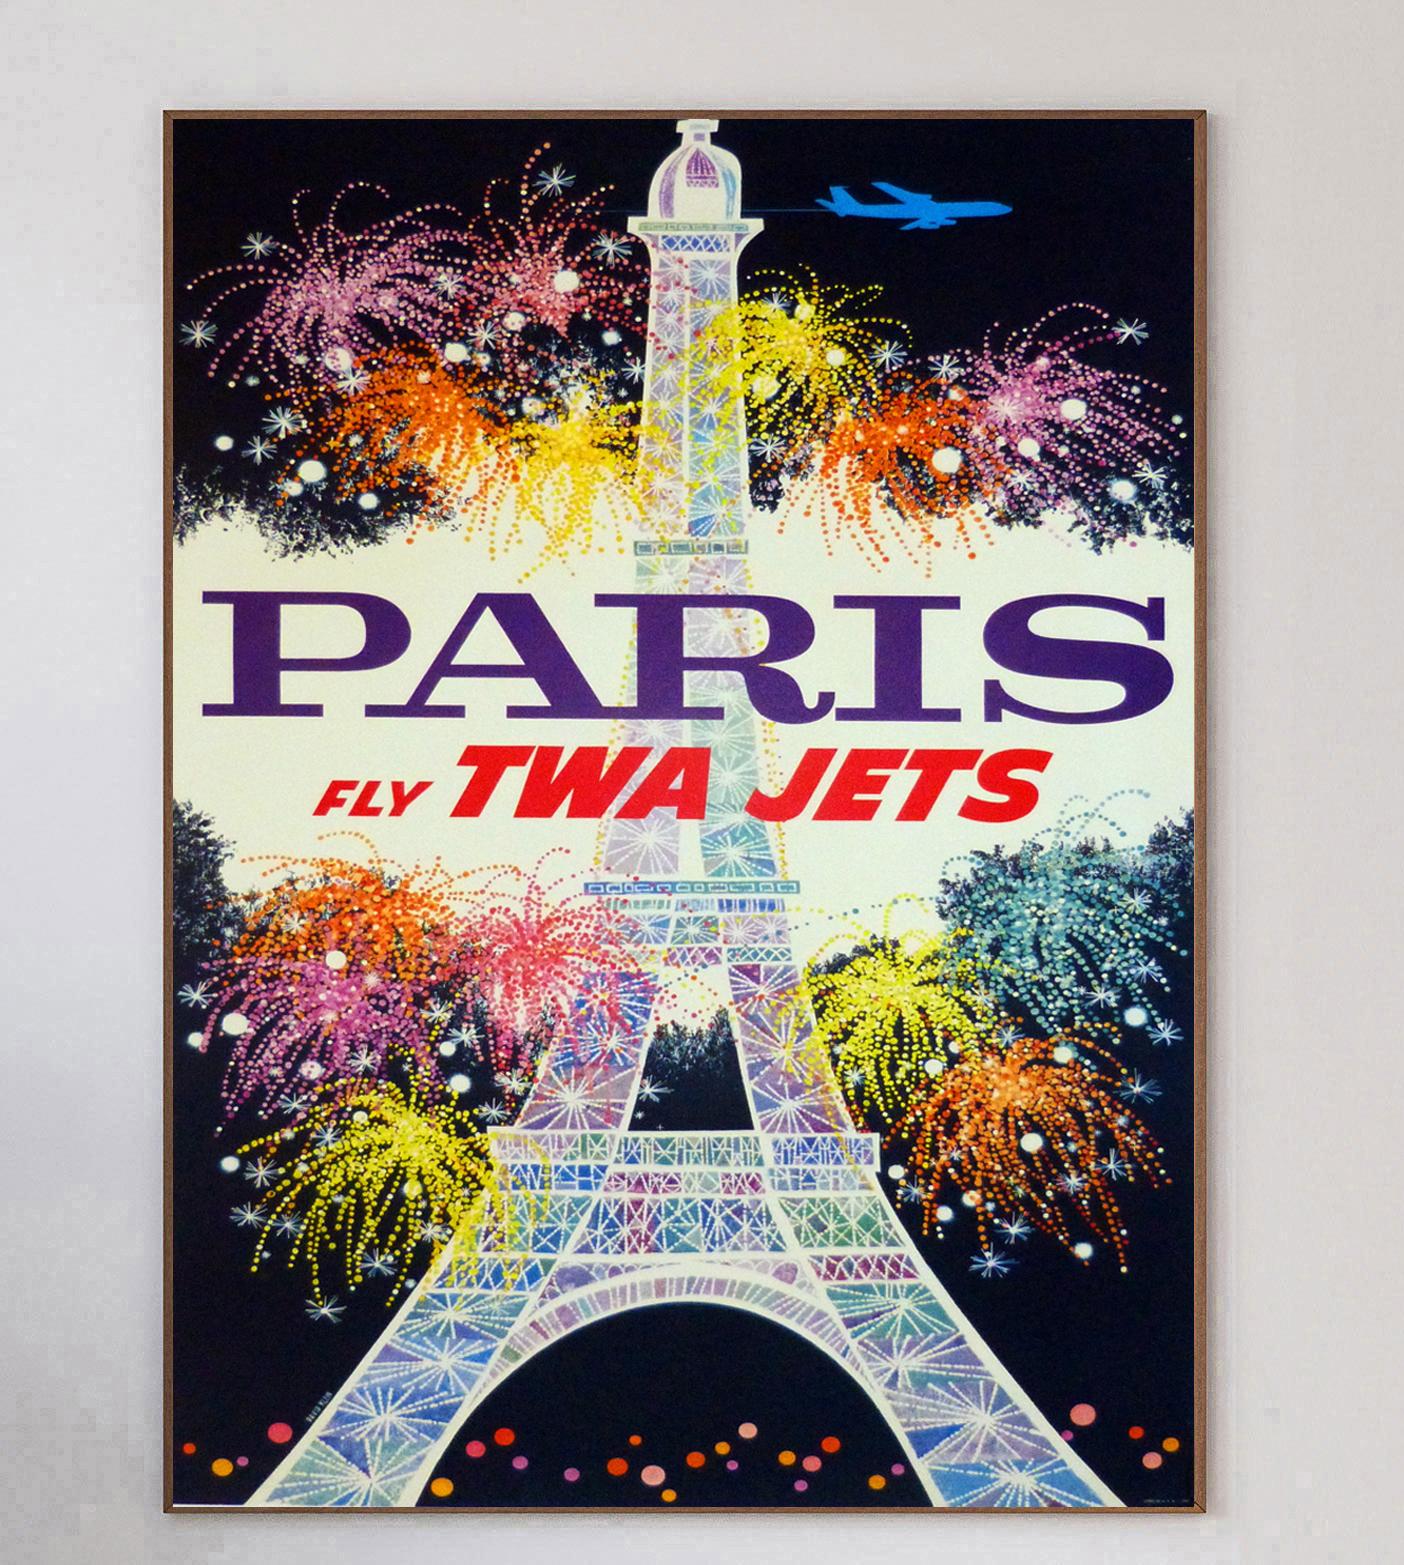 Cette affiche a été créée en 1960 pour la Trans World Airlines d'Howard Hughes afin de promouvoir ses liaisons avec Los Angeles, en Californie. Illustré par l'influent artiste américain David Klein, ce dessin présente une magnifique image de la Tour